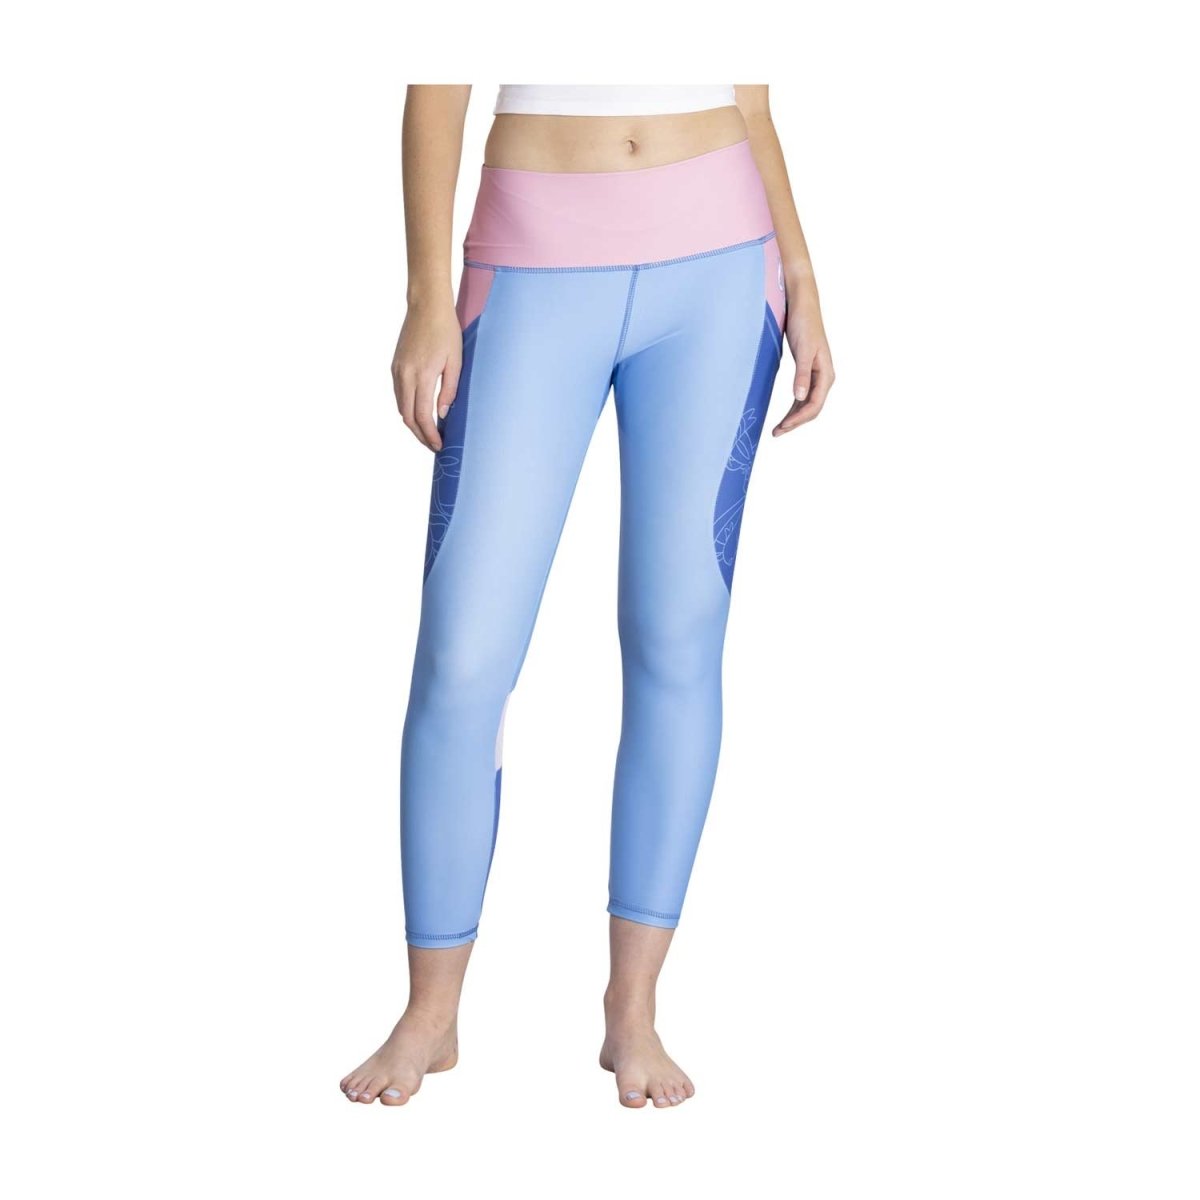 Super Soft 7/8 Yoga Leggings - 7/8 Length, Women's Leggings